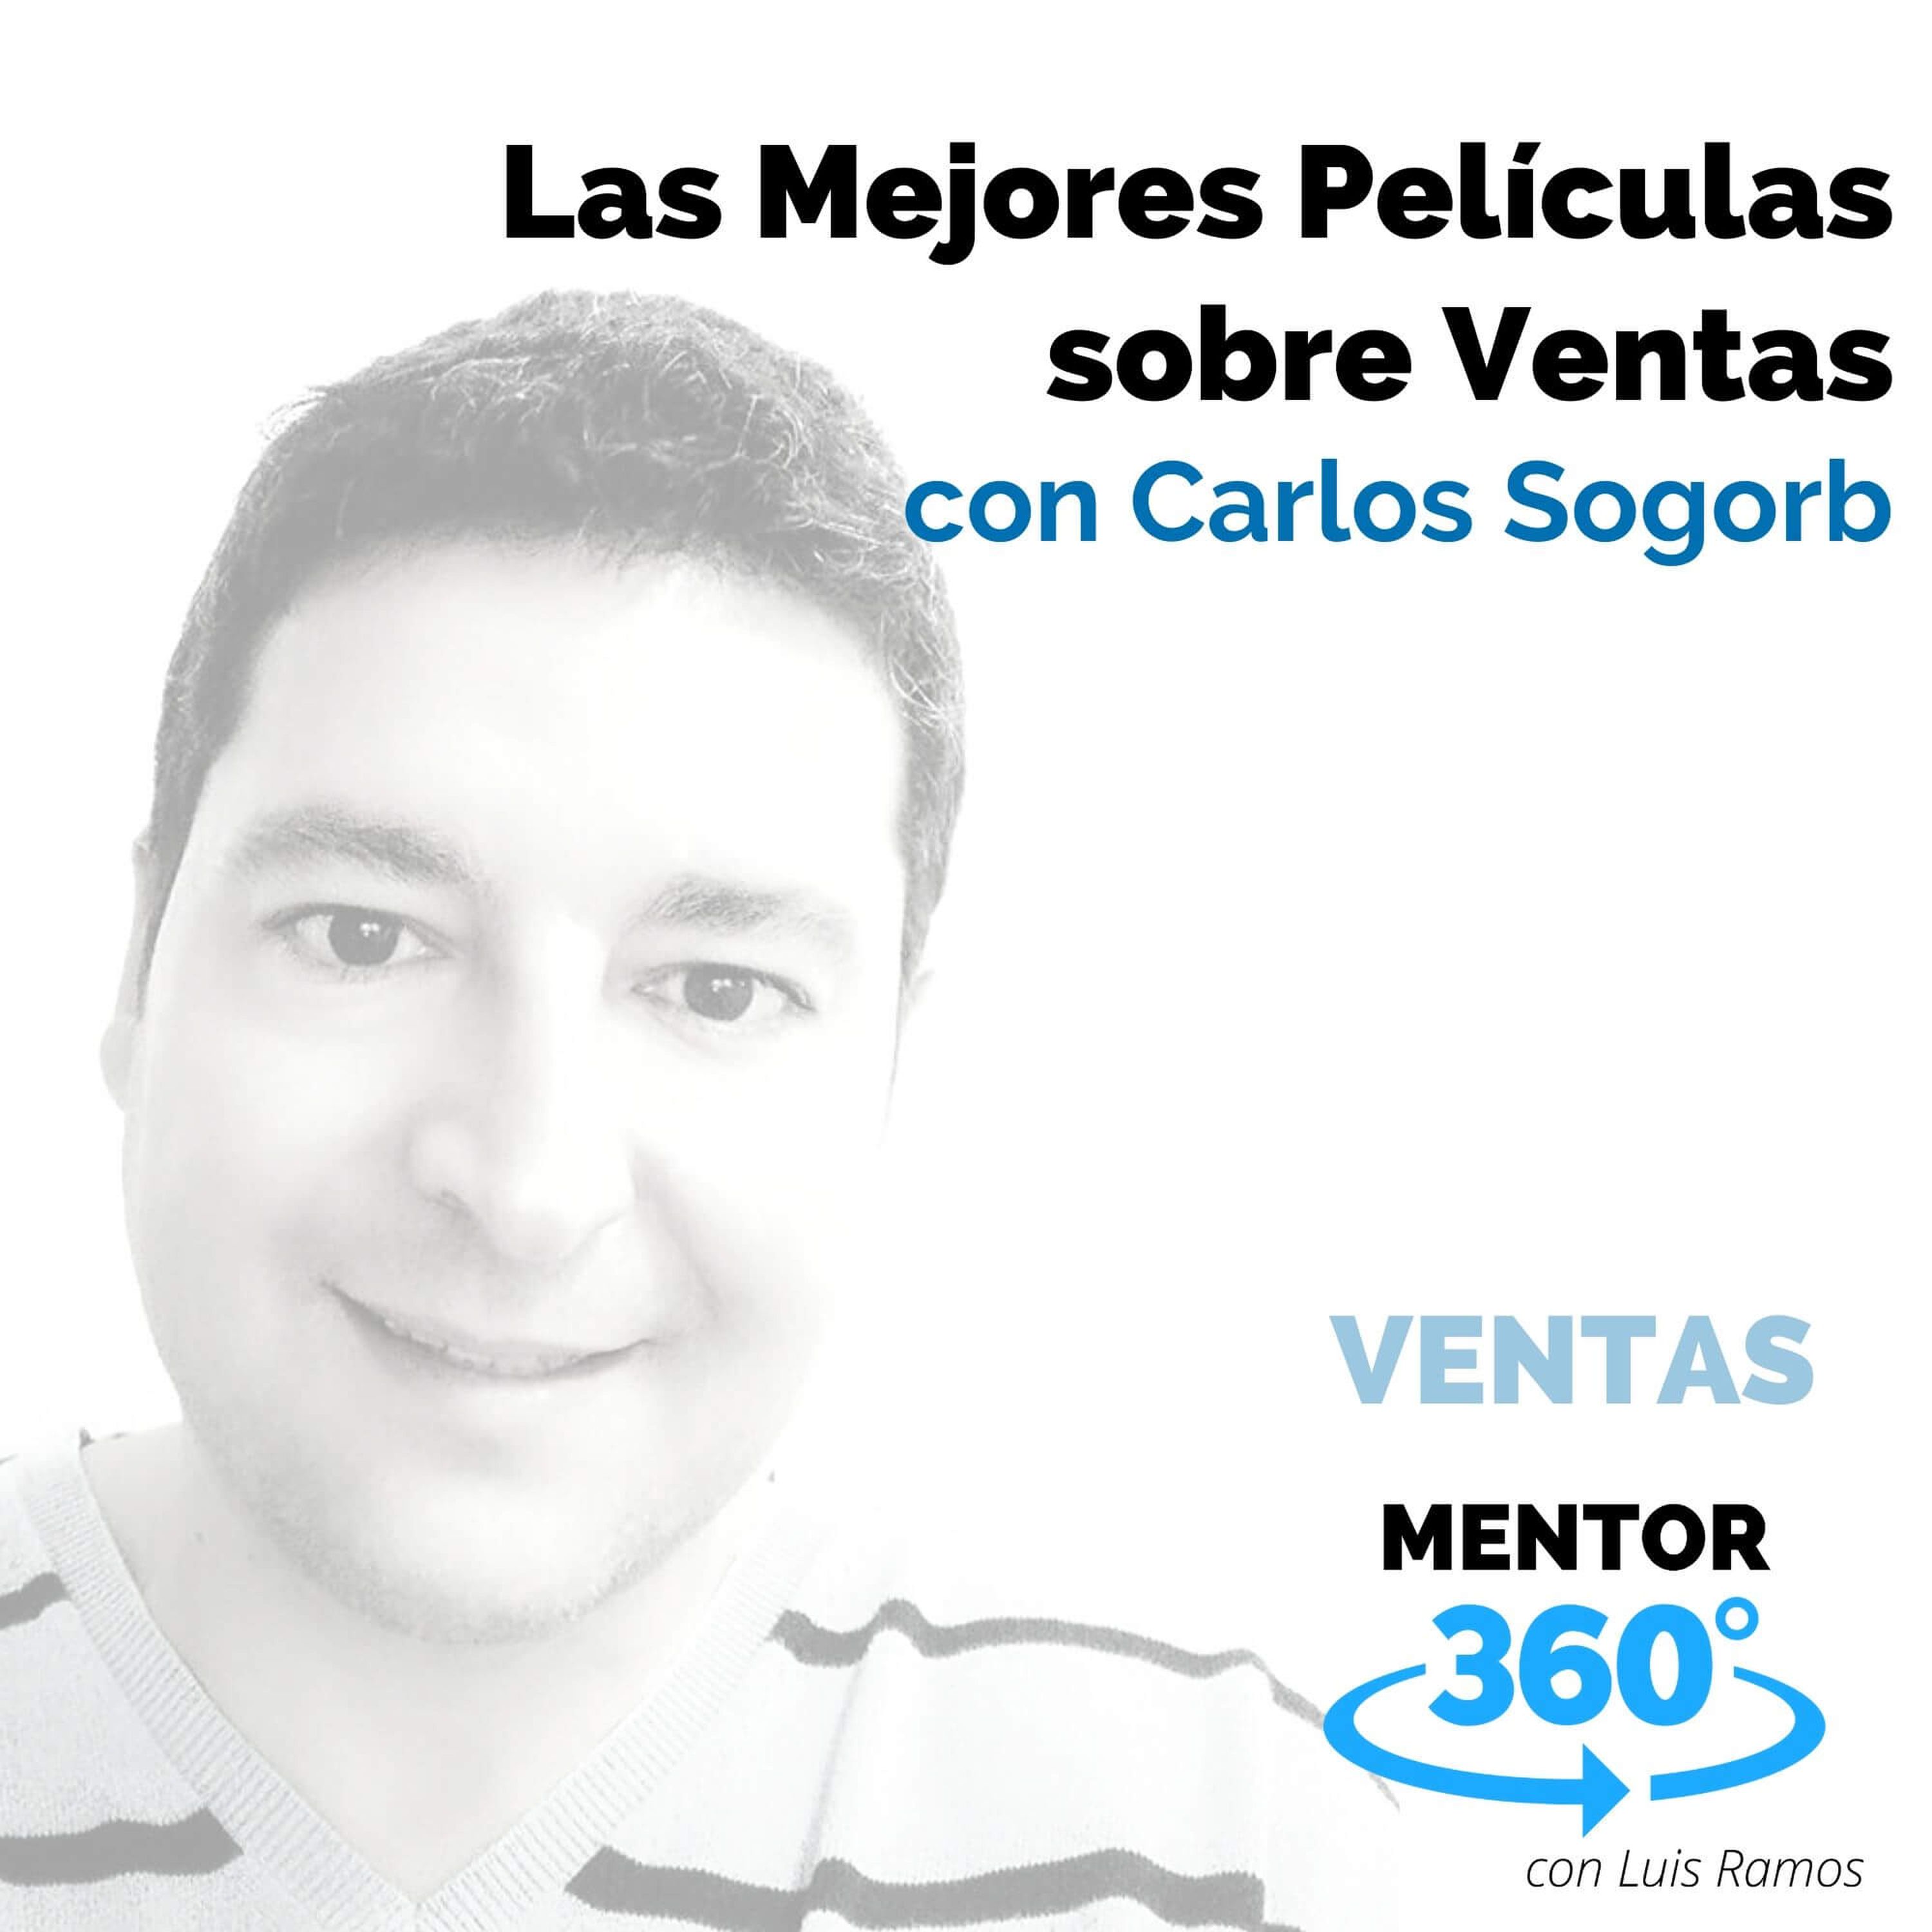 Las Mejores Películas sobre Ventas, con Carlos Sogorb - VENTAS - MENTOR360